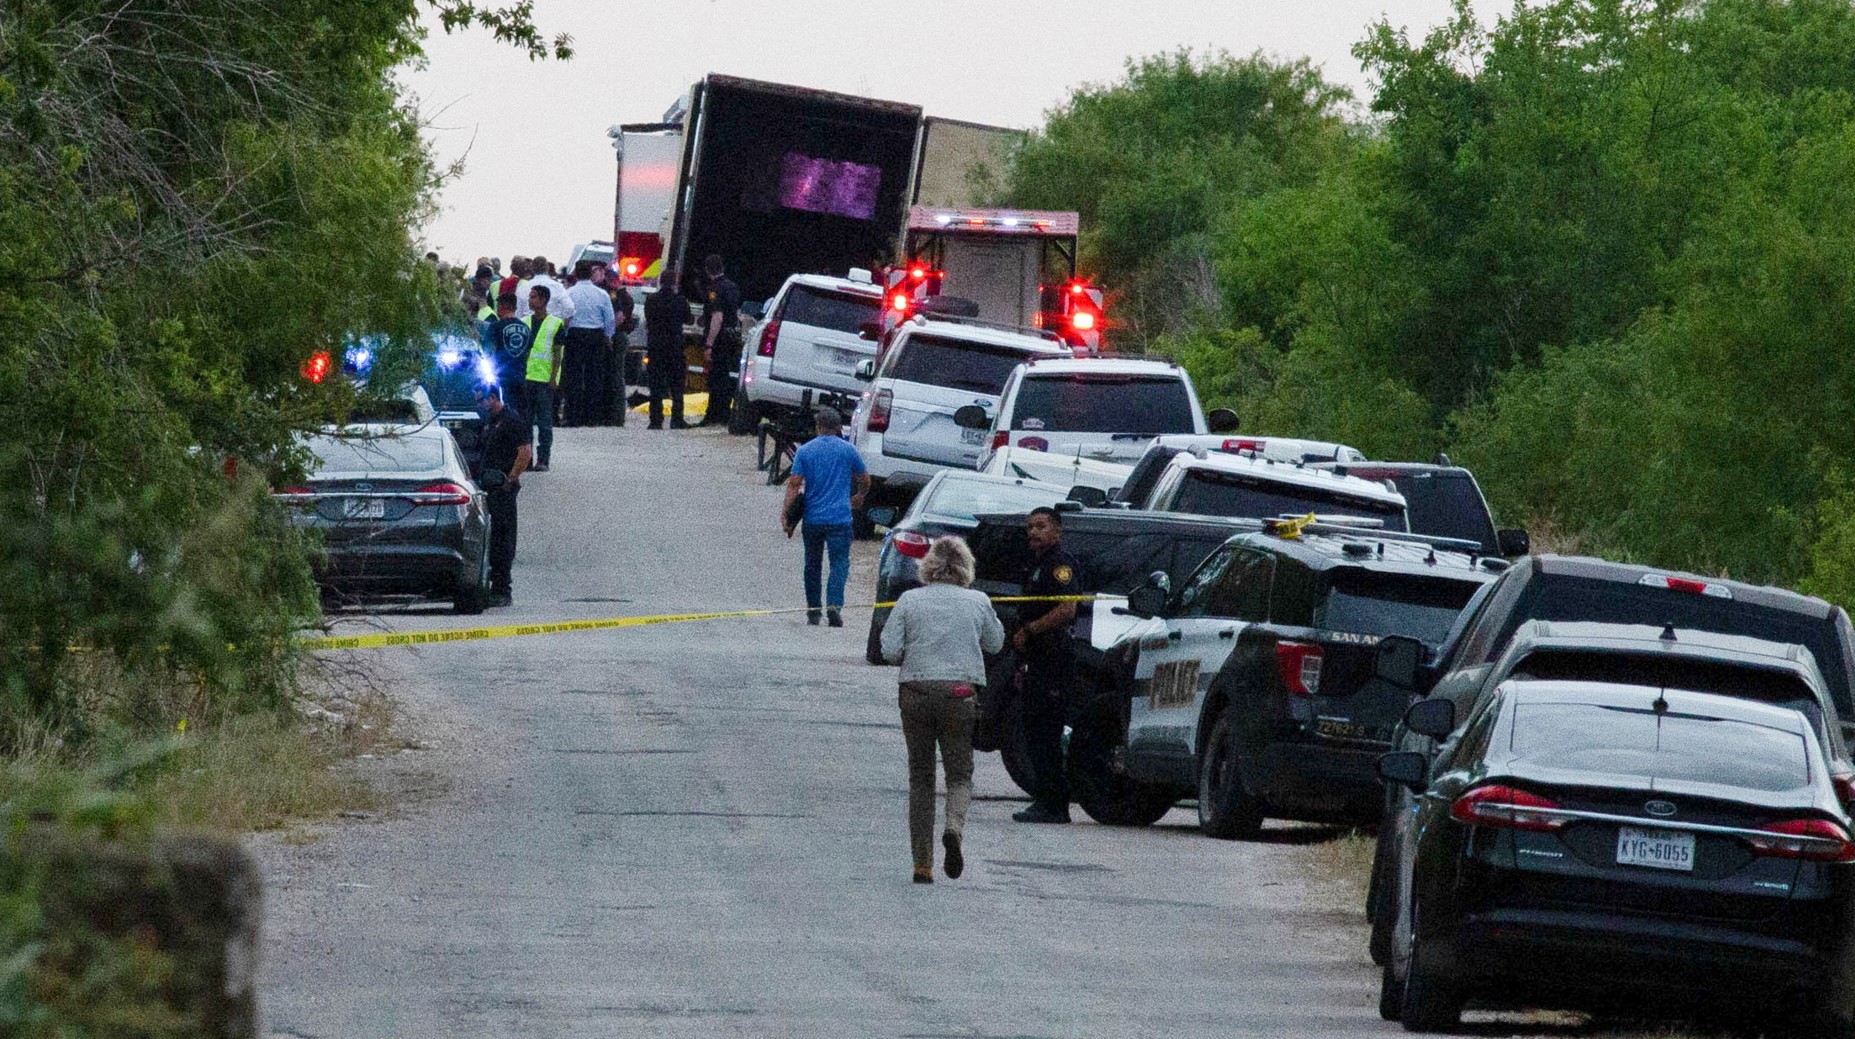 42 трупа в камион-гробница в Тексас